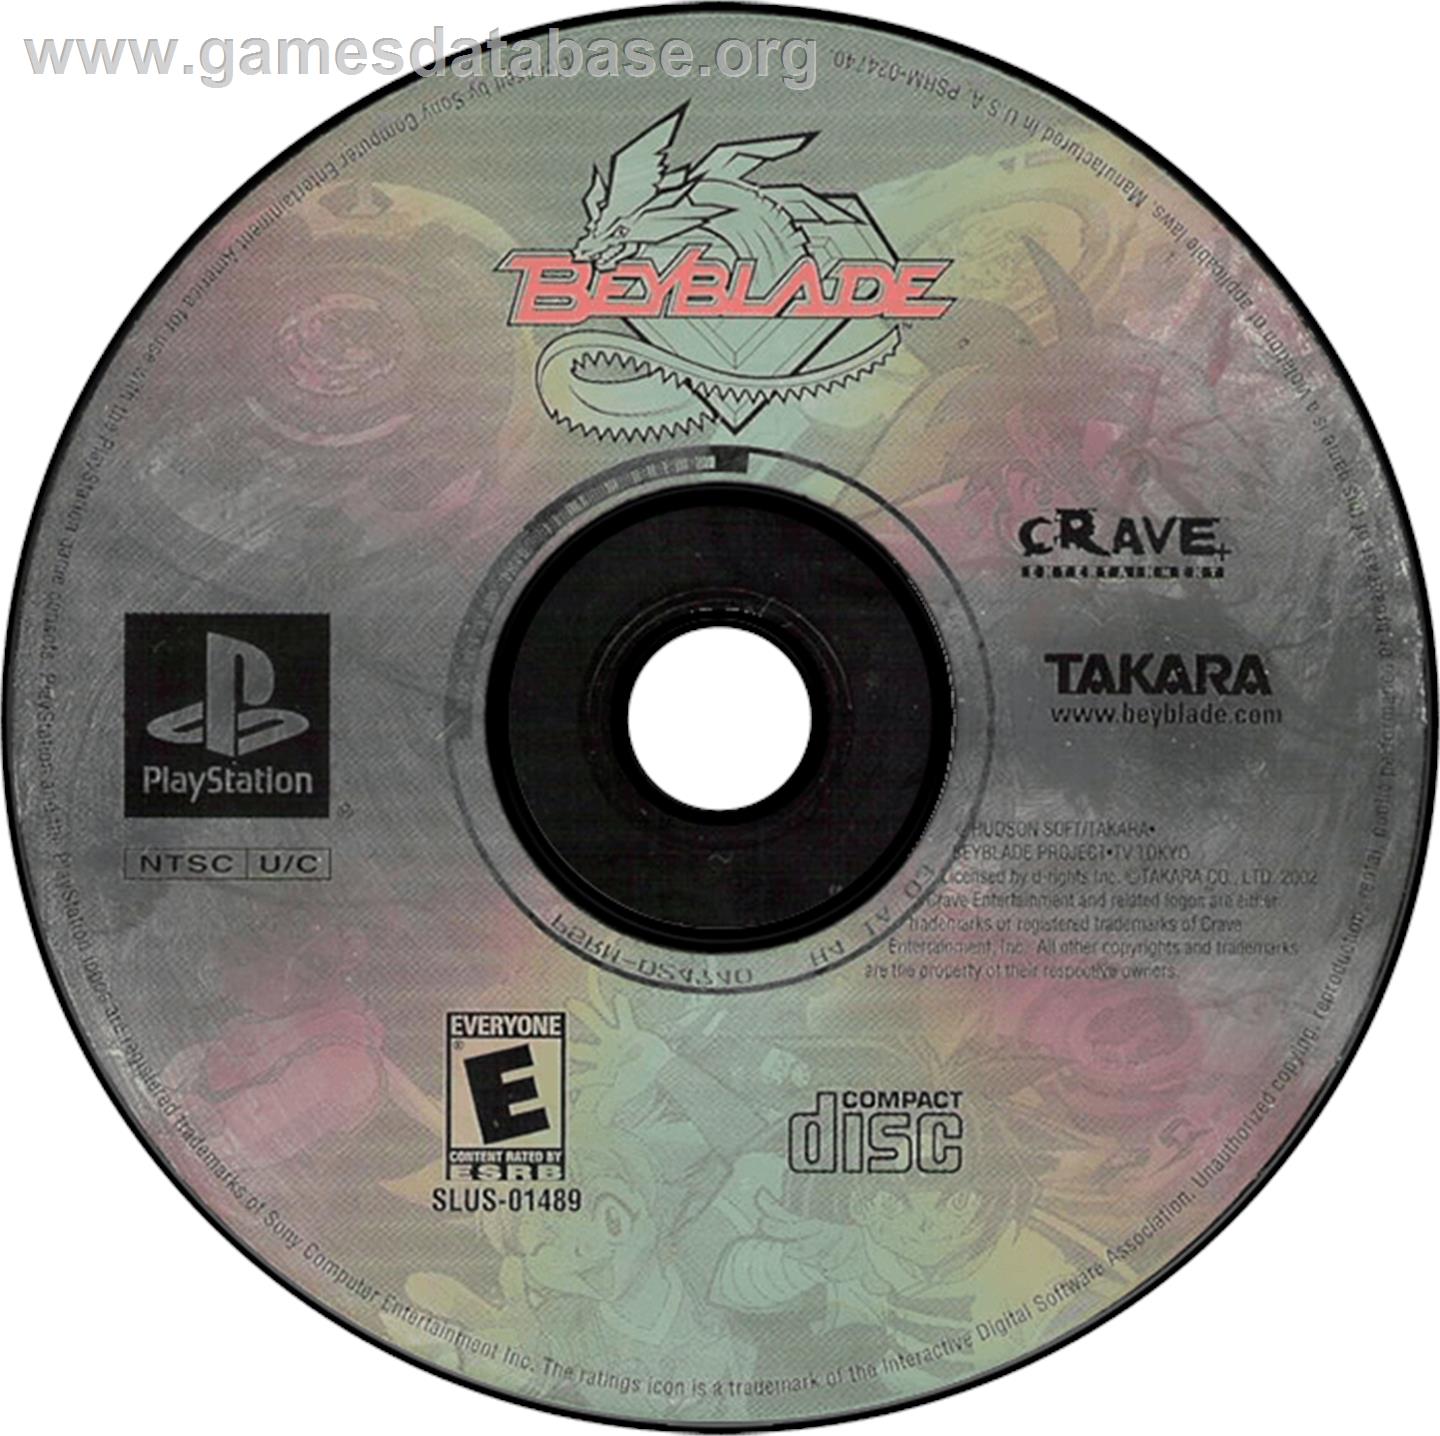 Beyblade - Sony Playstation - Artwork - Disc